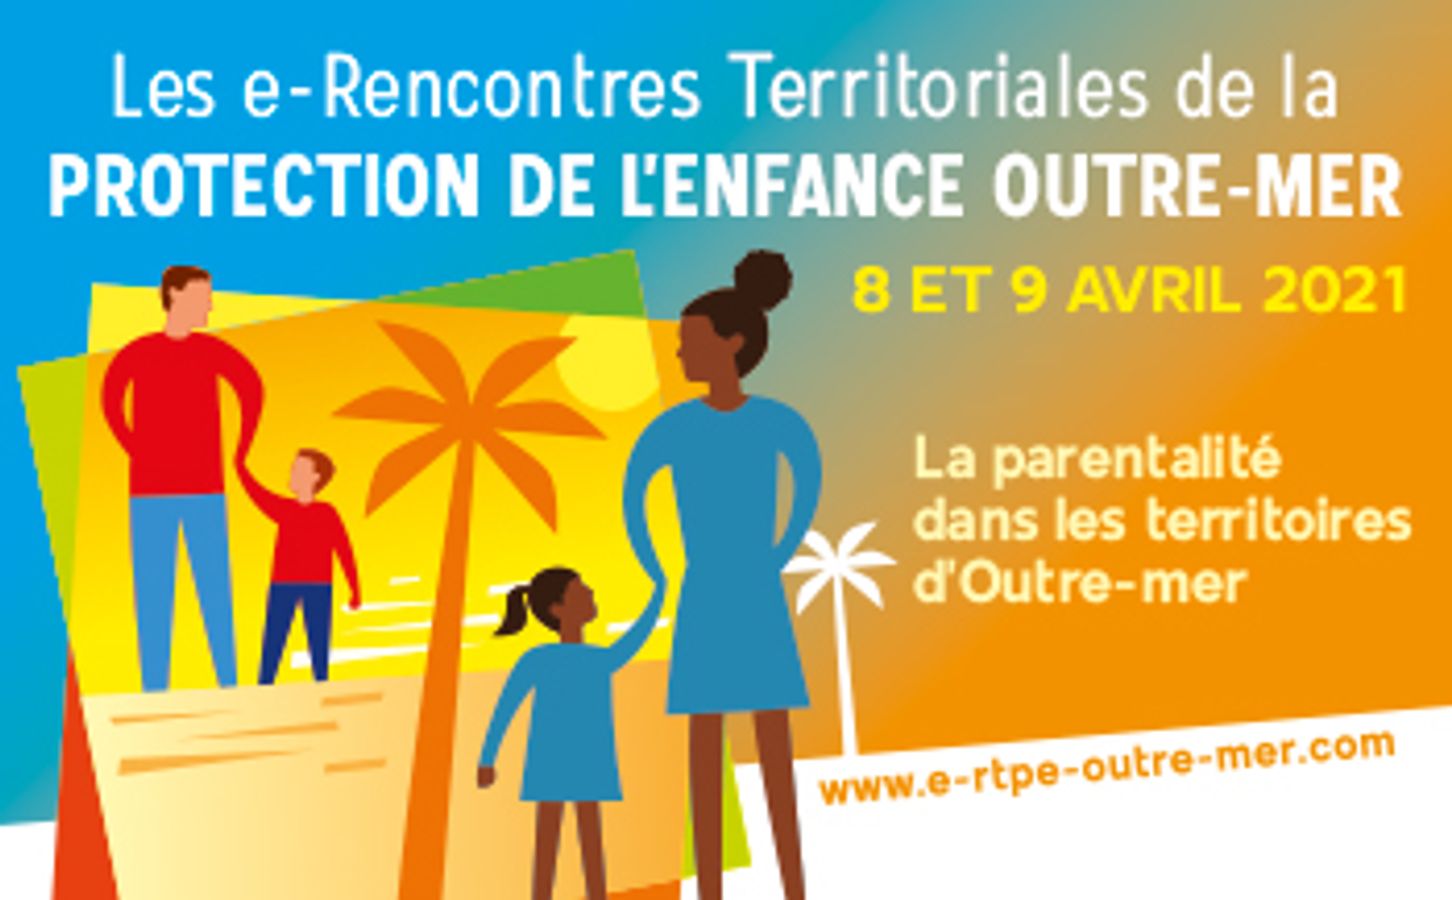 La mobilisation des ressources familiales : illustrations dans un cadre judiciaire et administratif - 3ème RTPE Outre-mer